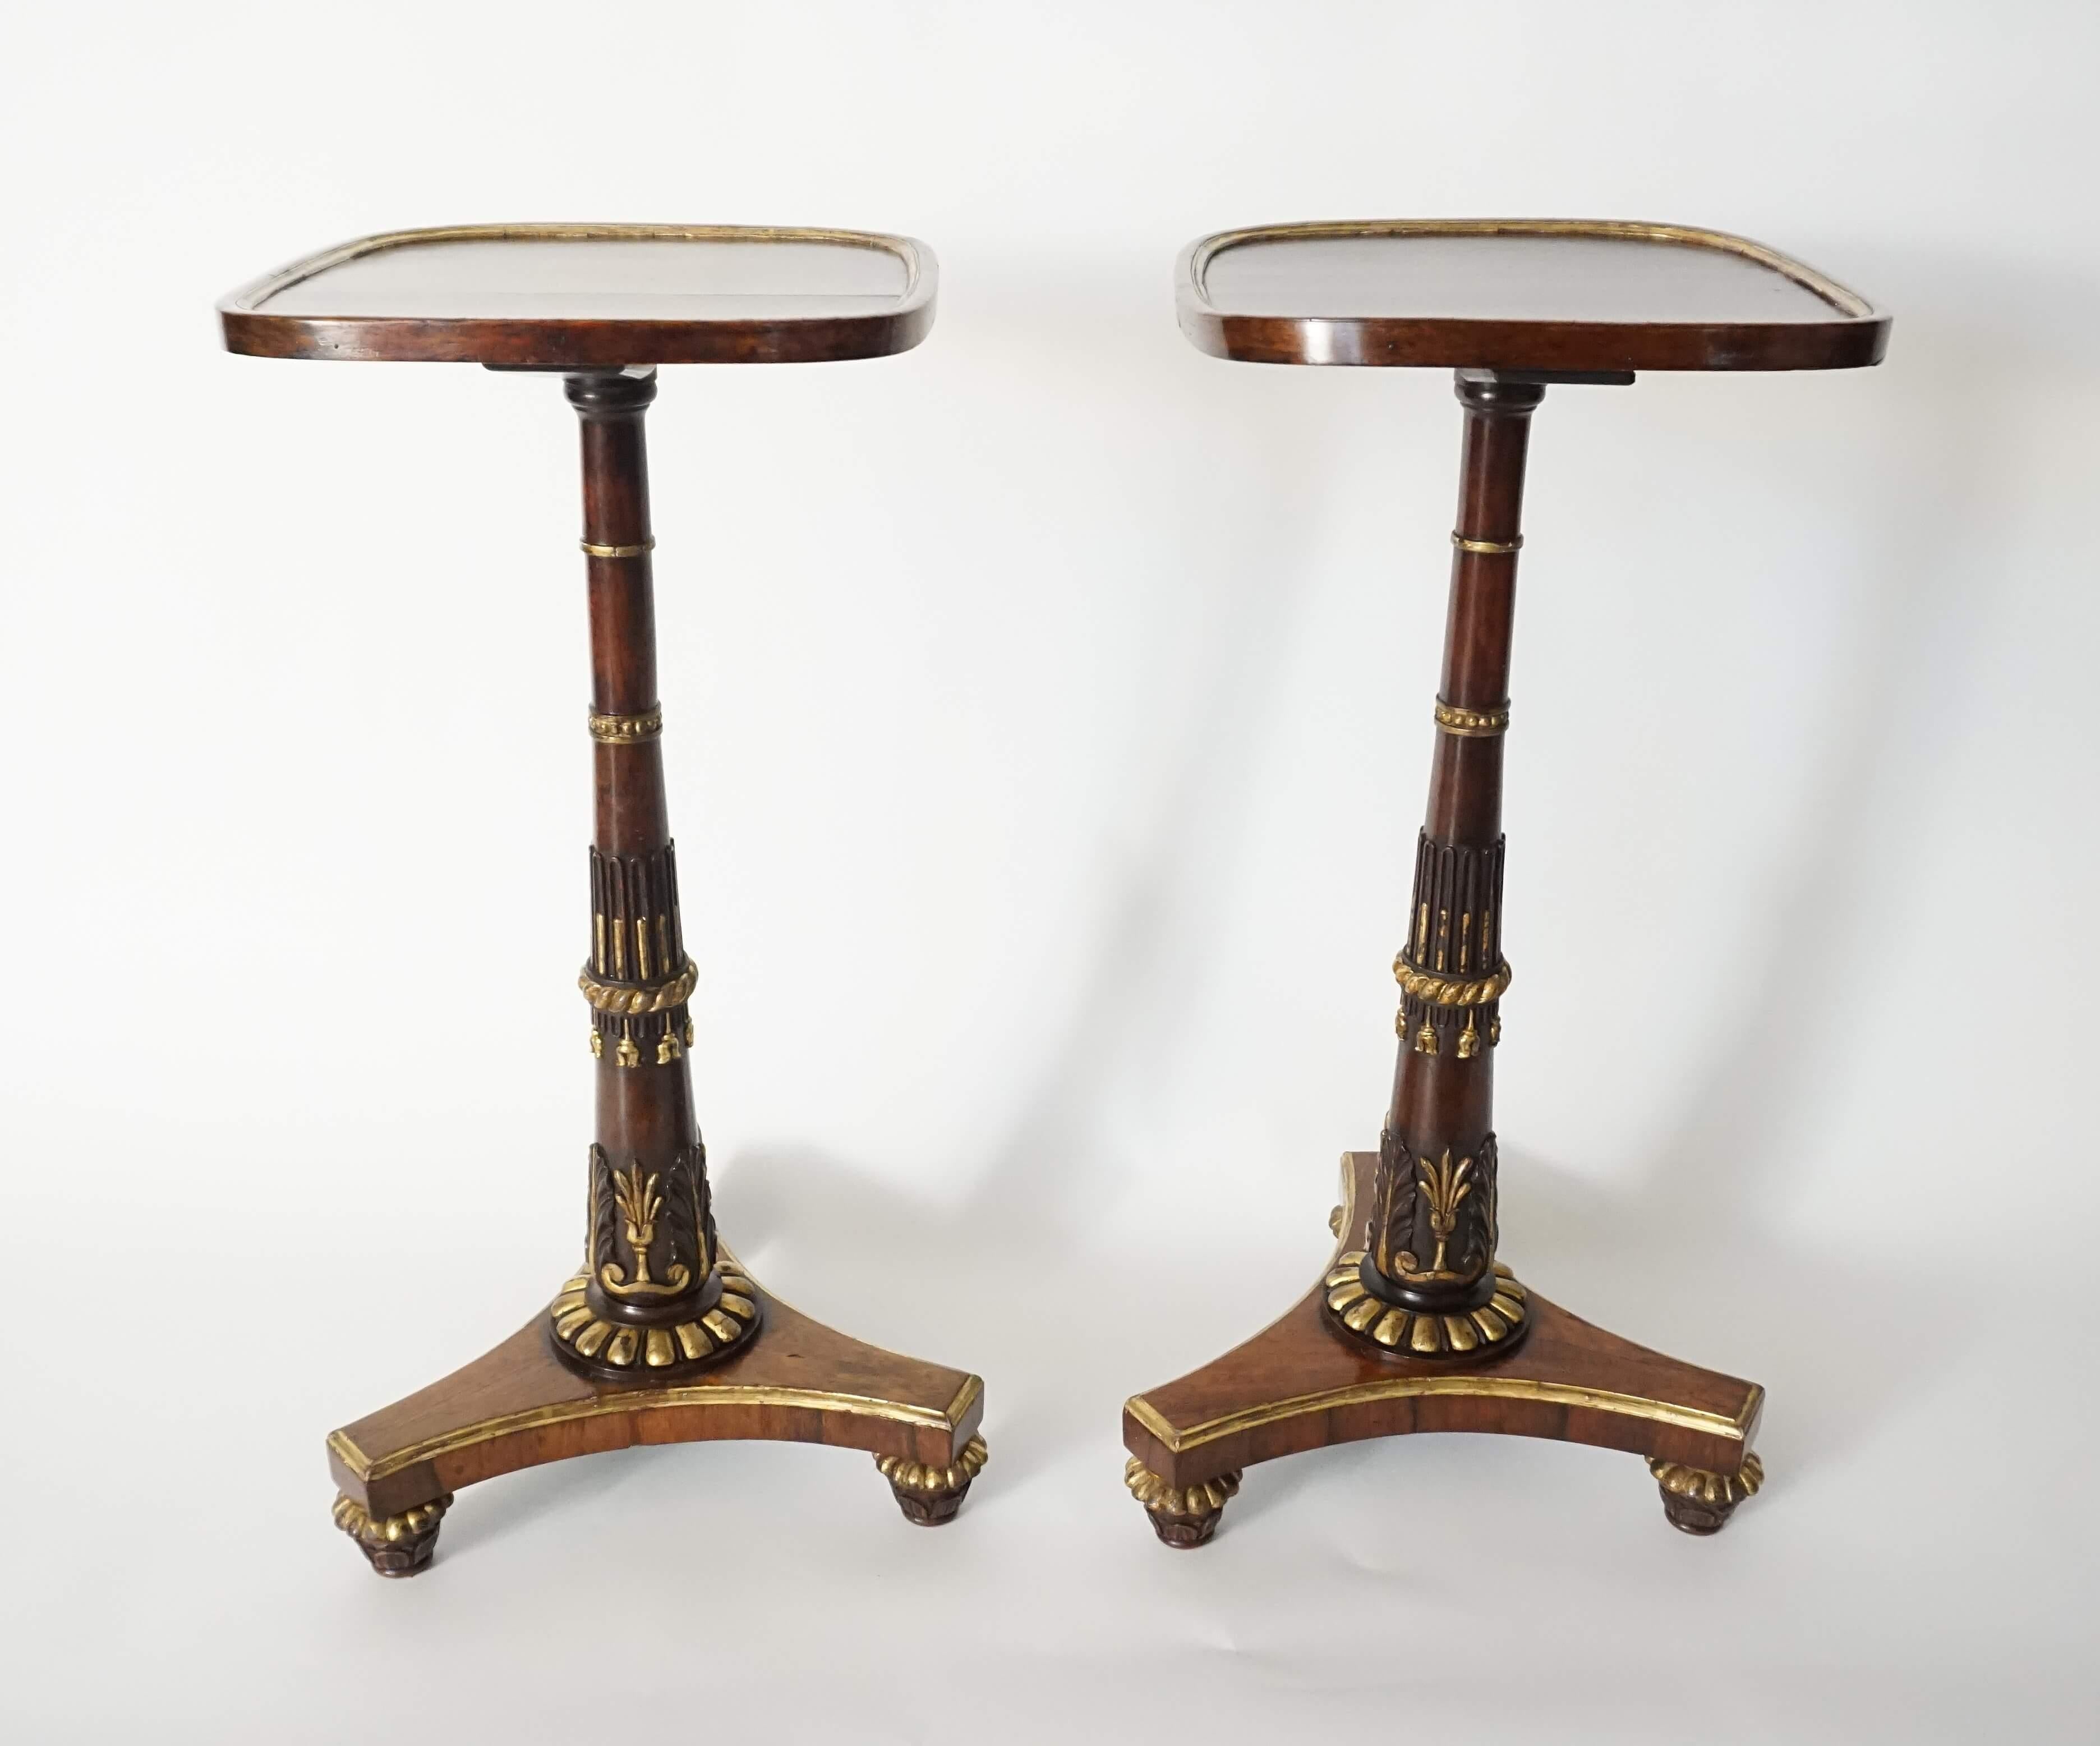 Hand-Carved English Regency Parcel-Gilt Rosewood Side Tables, Morel & Seddon, circa 1828